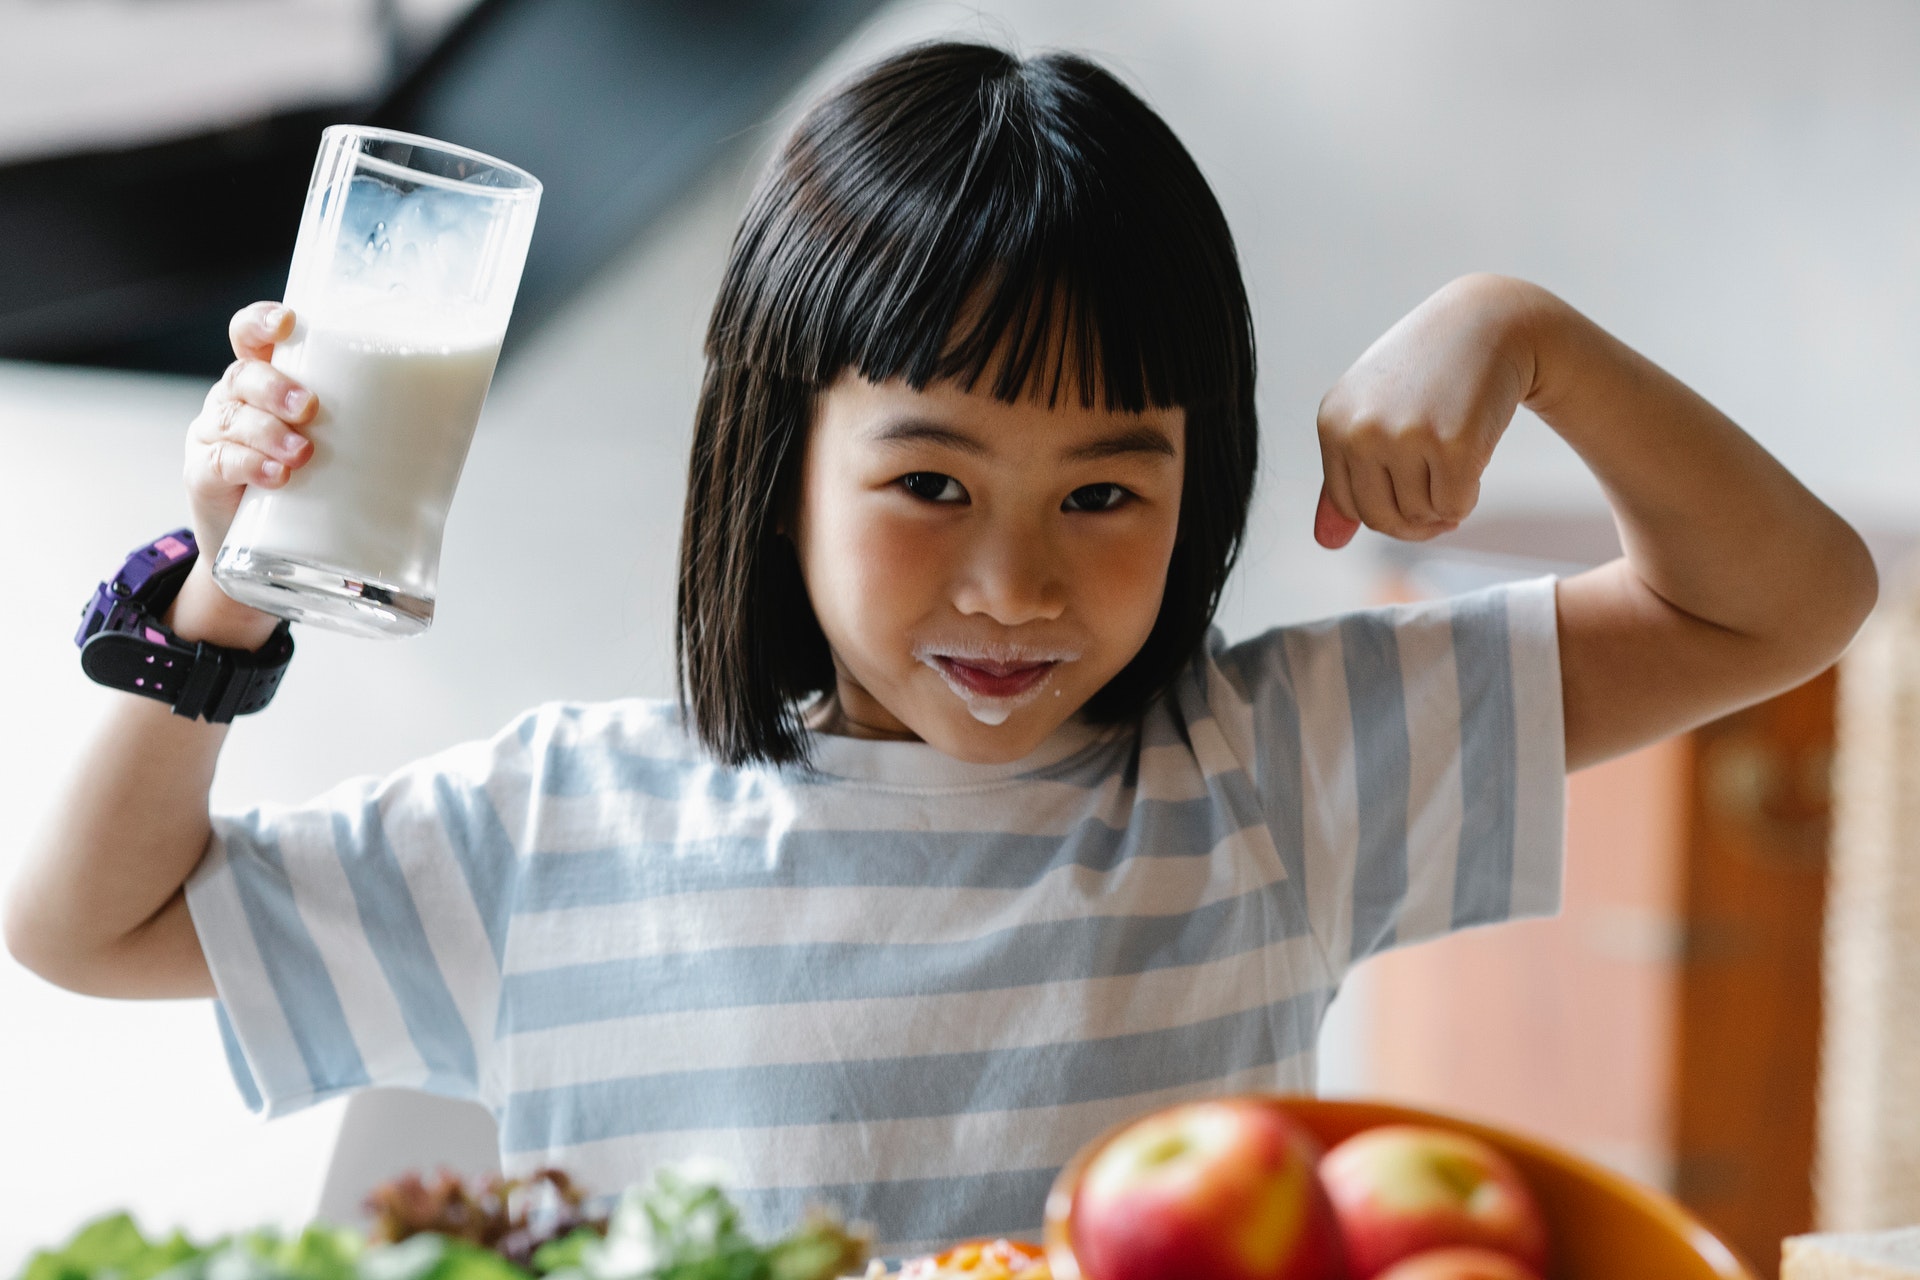 الحليب ومشروبات أخرى تضر بصحة العظام